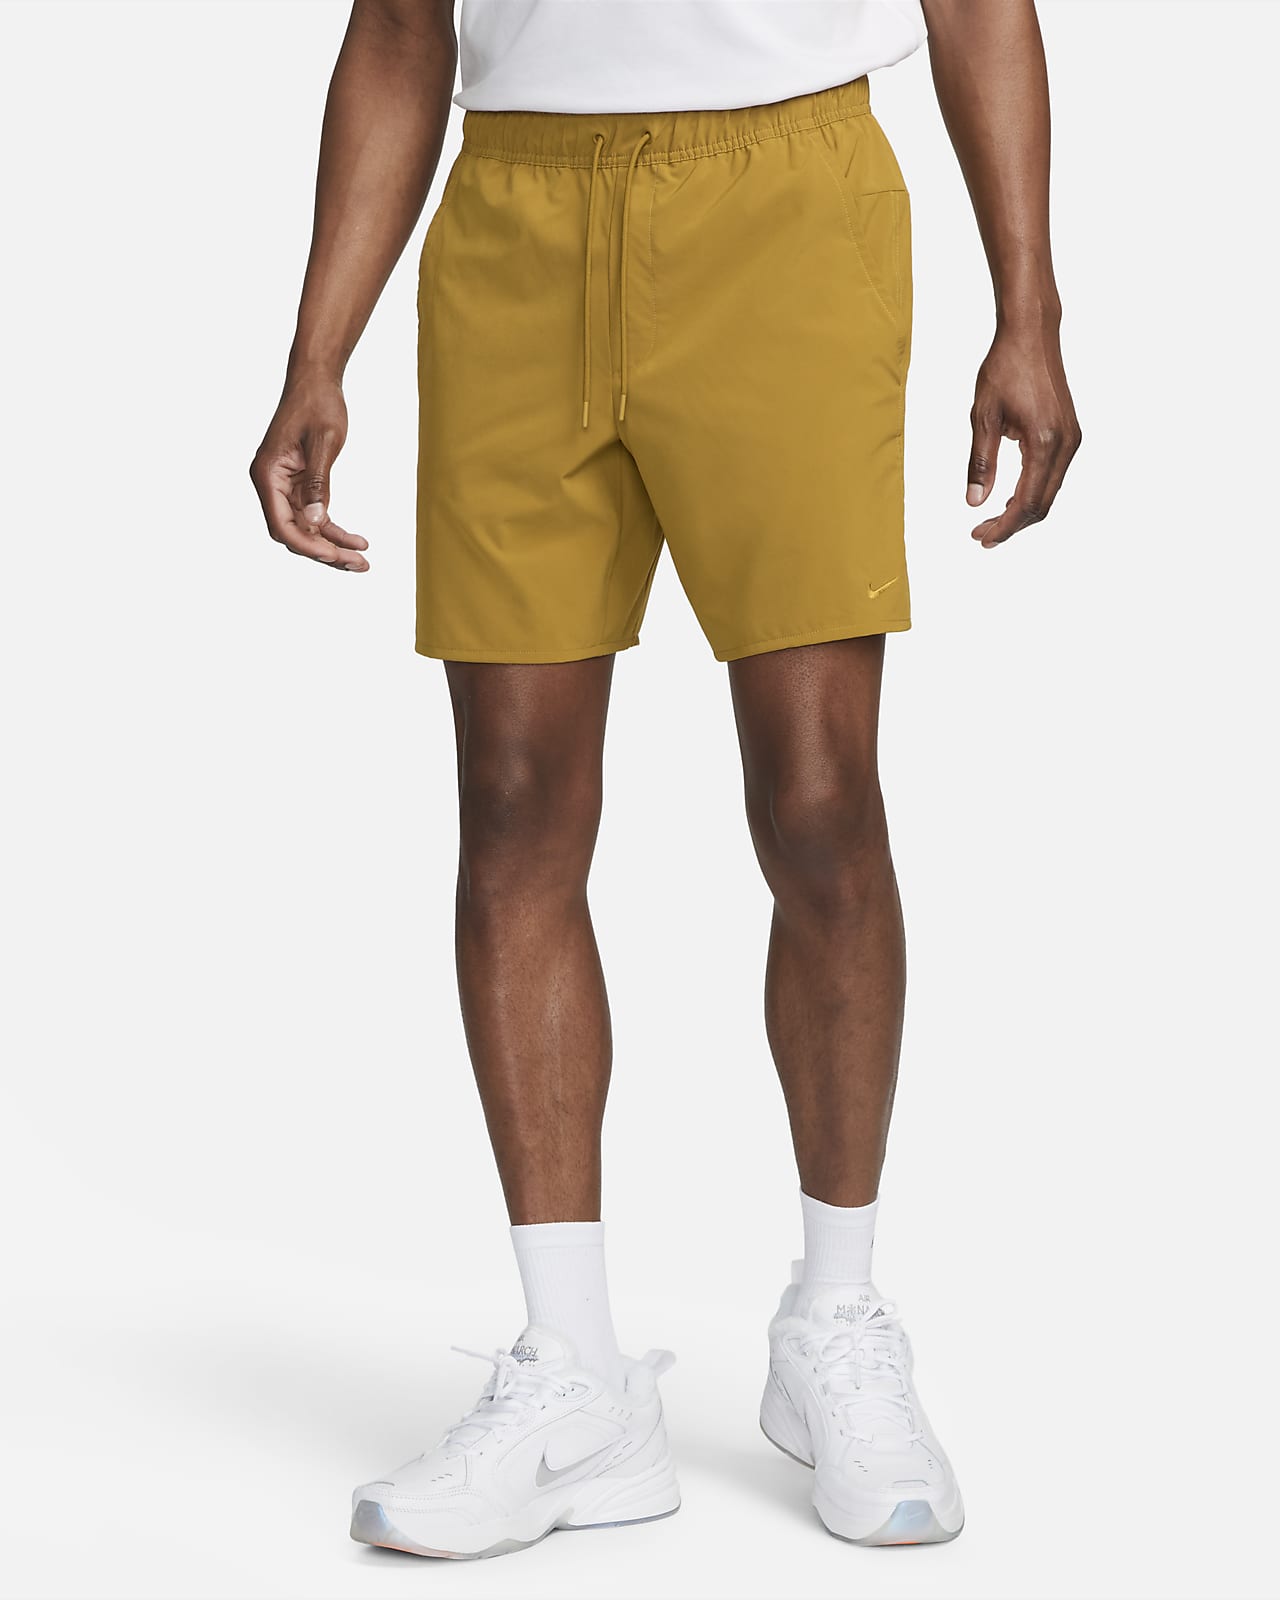 Nike Unlimited Dri-FIT allsidig shorts uten fôr til herre (18 cm)